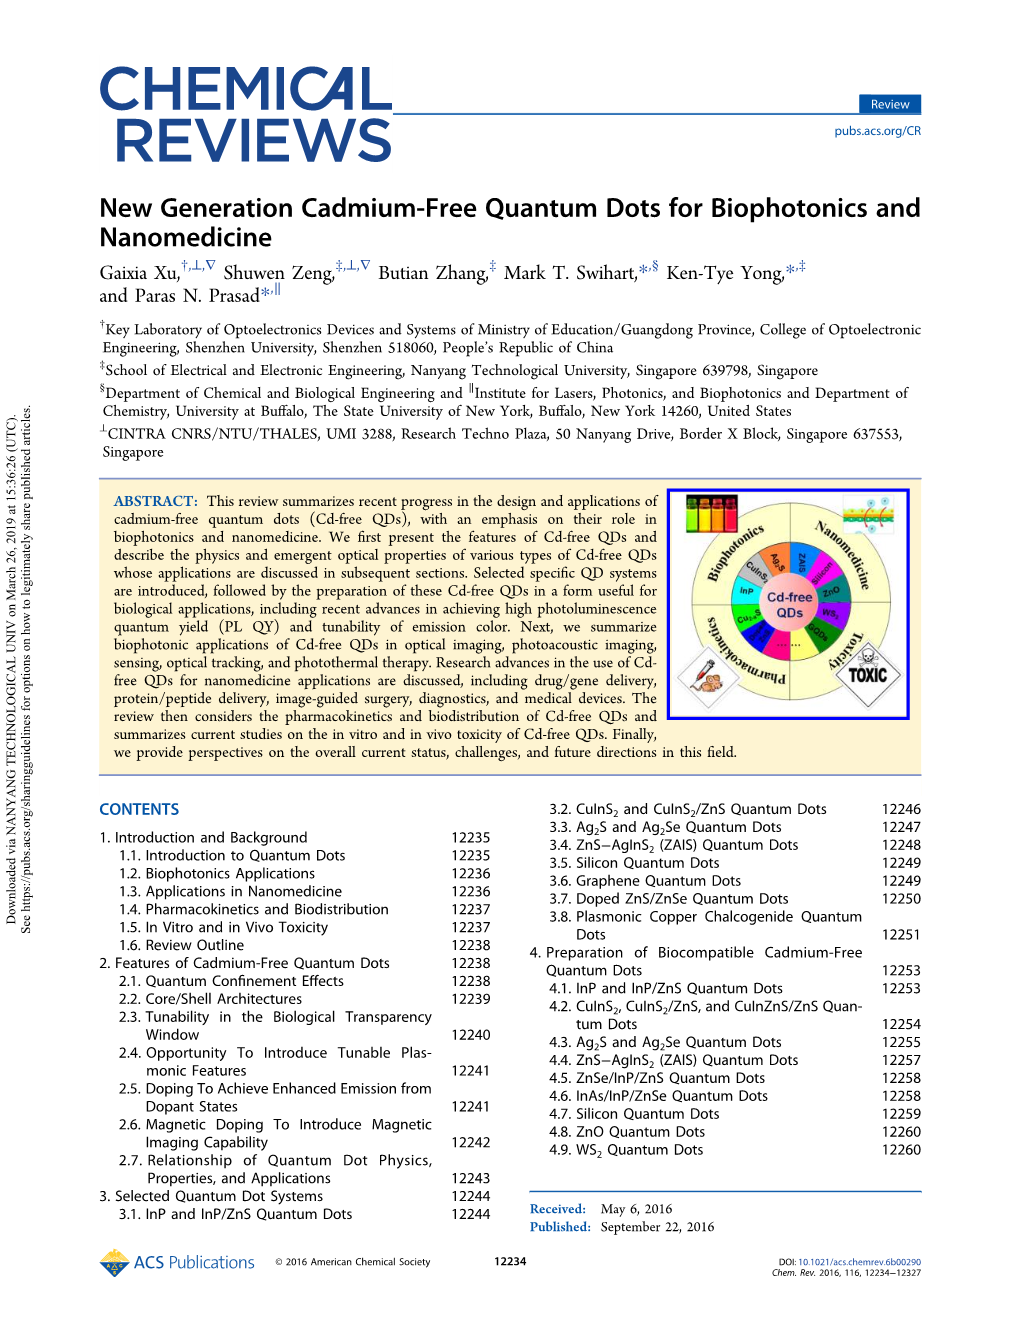 New Generation Cadmium-Free Quantum Dots for Biophotonics and Nanomedicine † ⊥ ∇ ‡ ⊥ ∇ ‡ § ‡ Gaixia Xu, , , Shuwen Zeng, , , Butian Zhang, Mark T